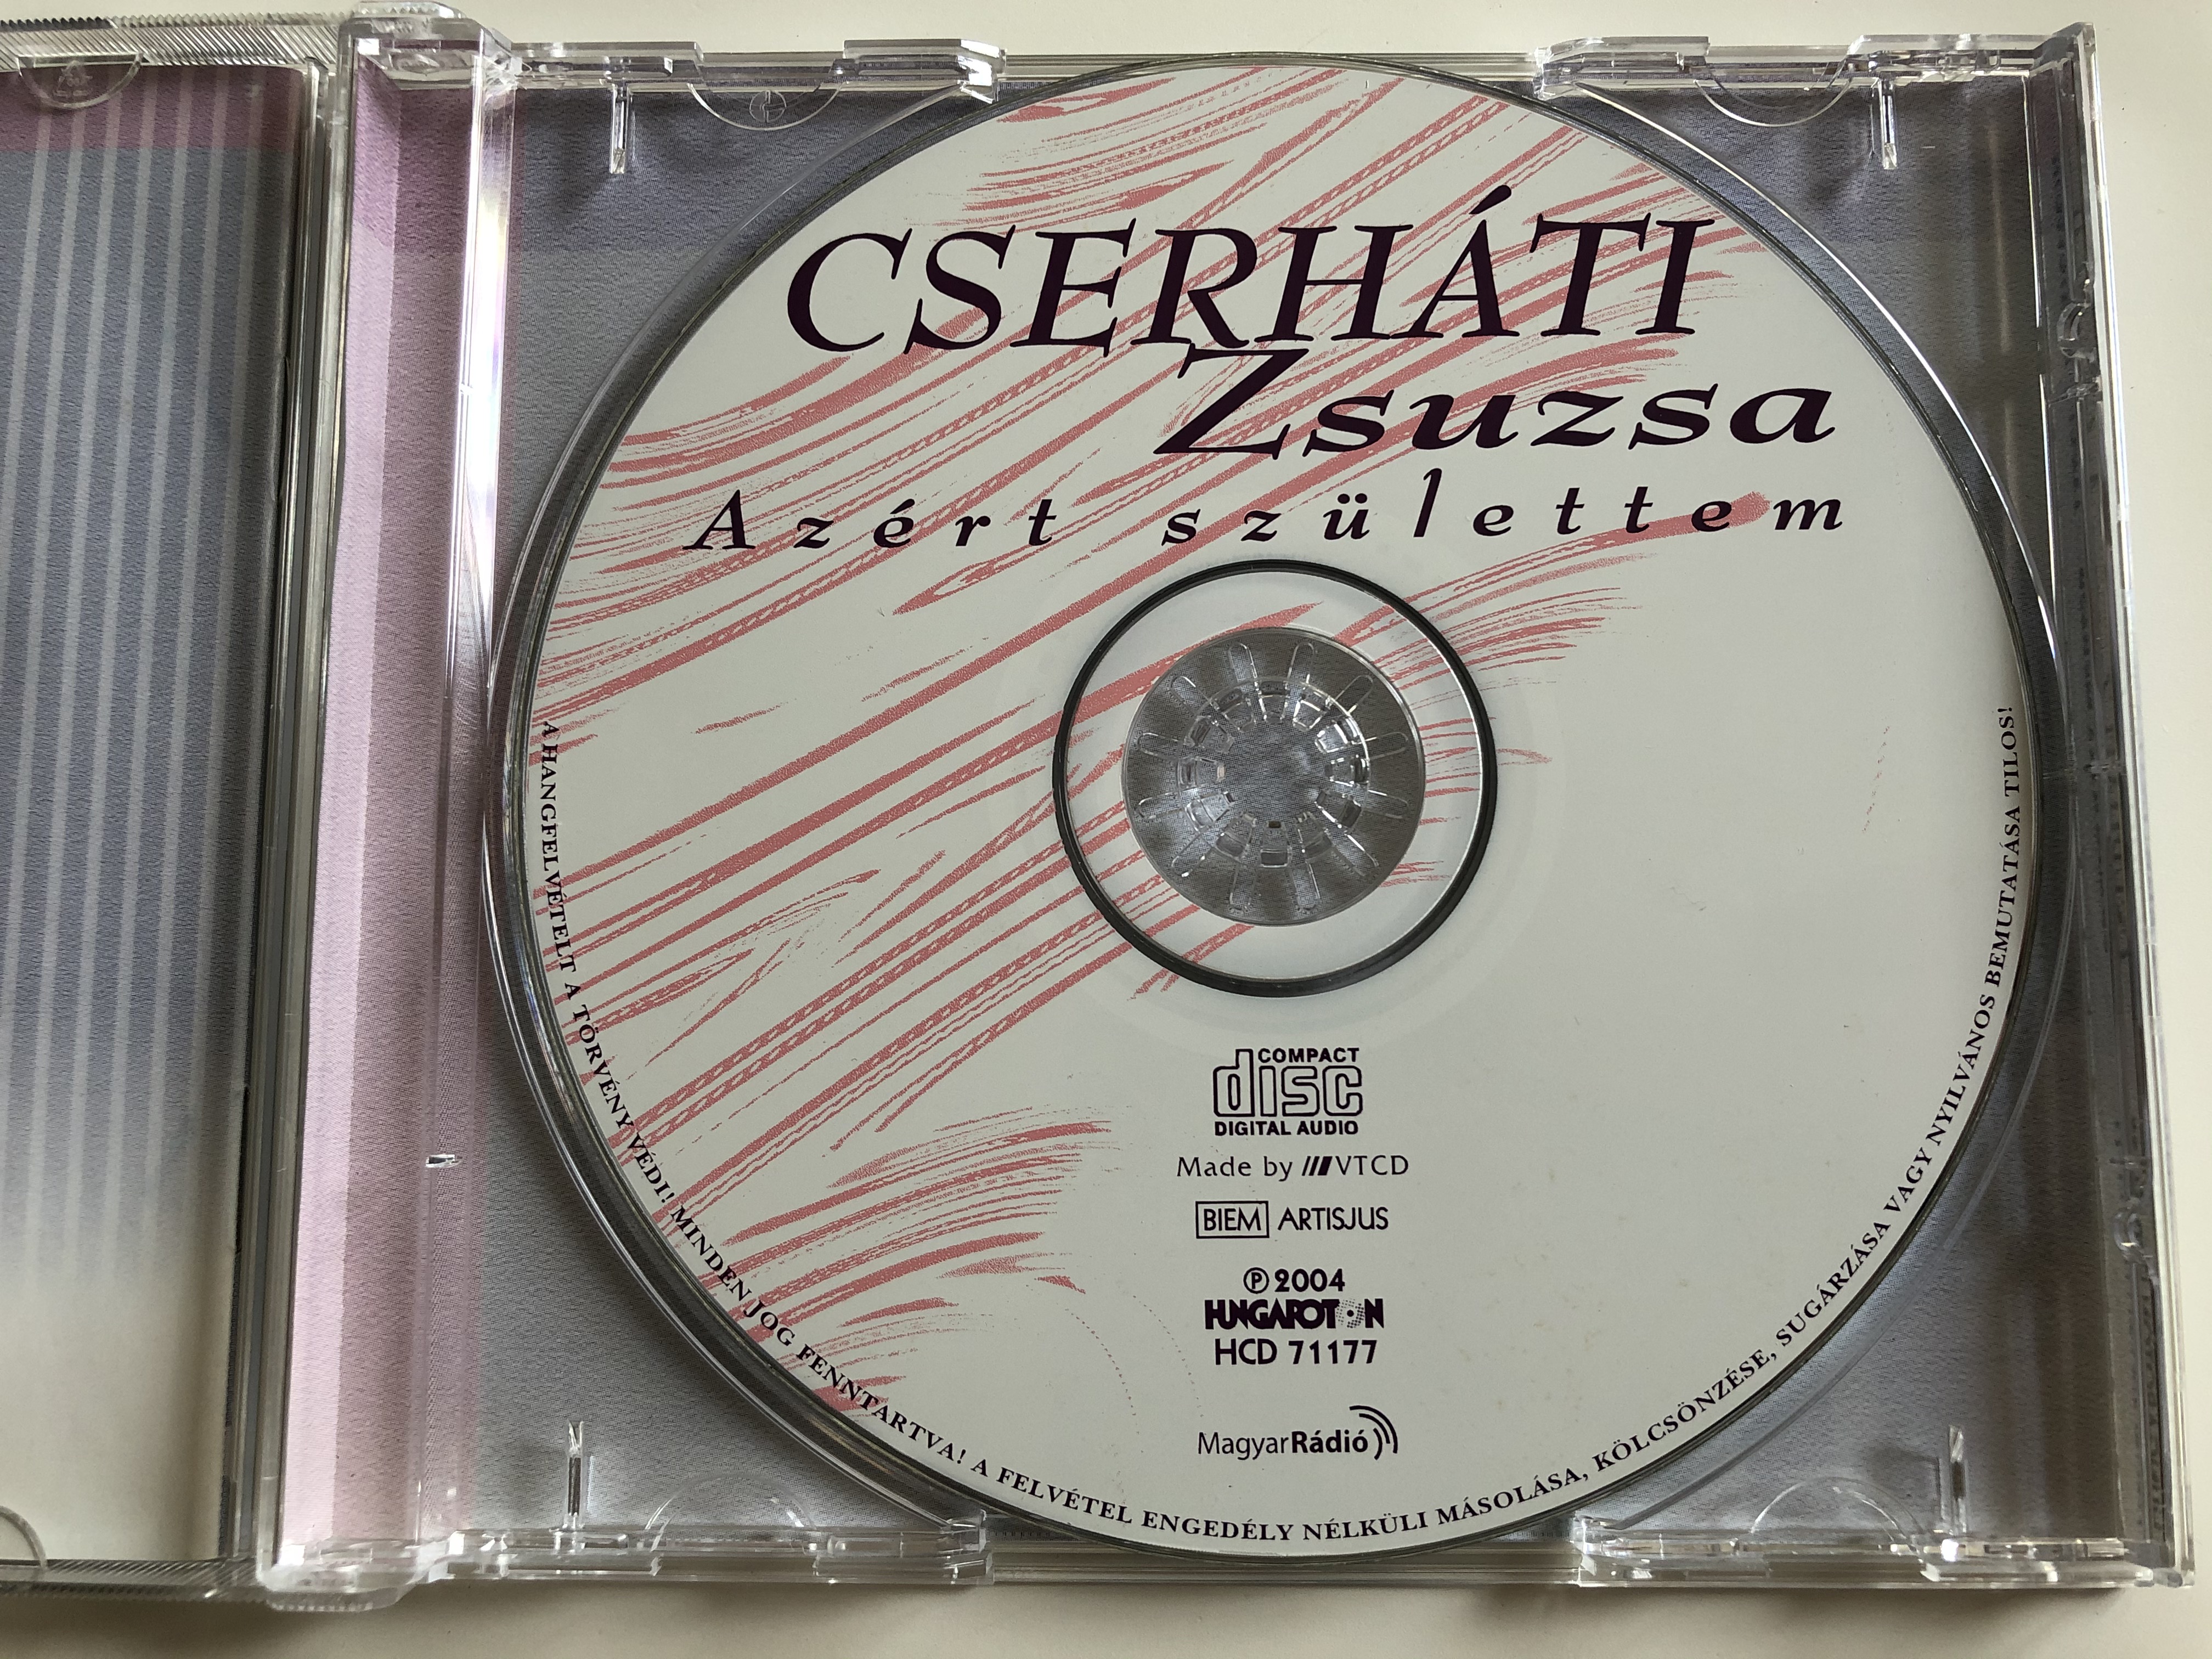 cserh-ti-zsuzsa-az-rt-sz-lettem-szakcsi-lakatos-bela-lakatos-antal-berkes-balazs-koszegi-imre-studio-11-hungaroton-audio-cd-2004-hcd-71177-6-.jpg